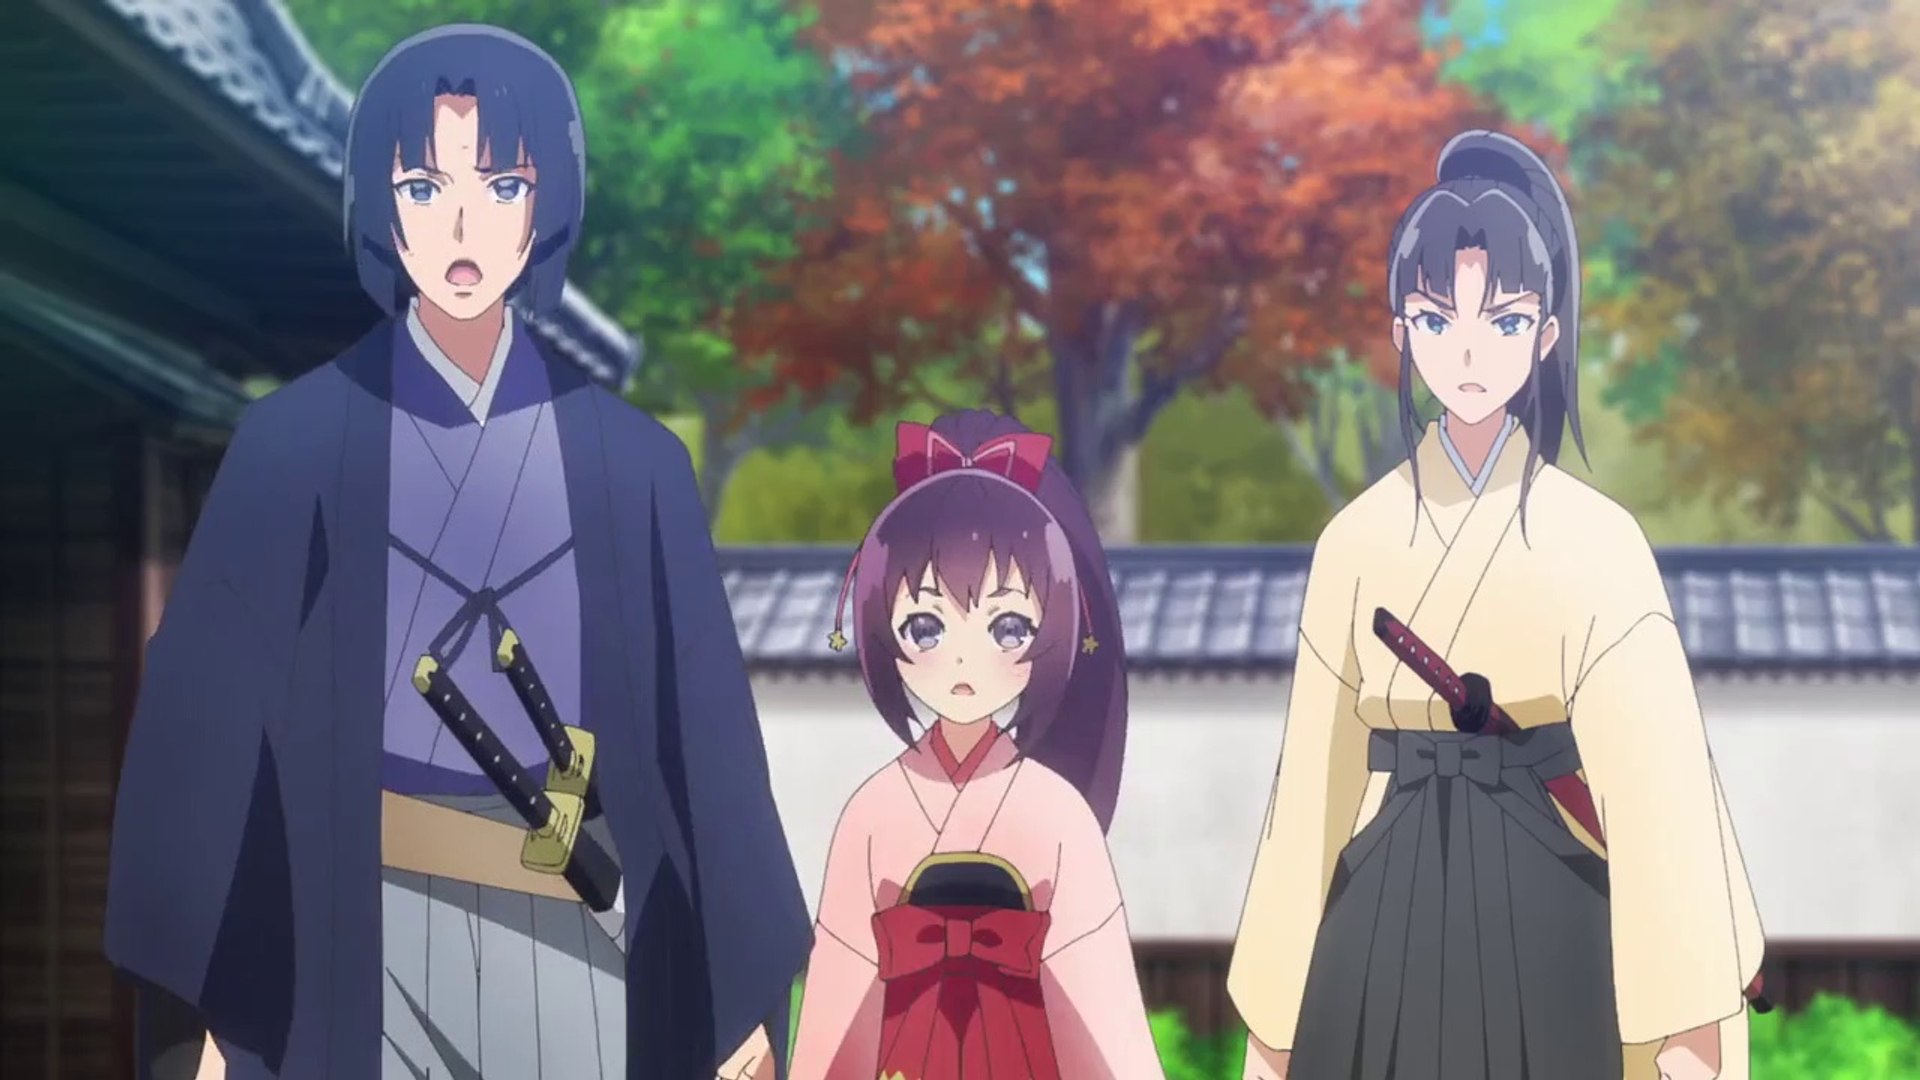 Episode 8 - Seirei Gensouki - Spirit Chronicles - Anime News Network